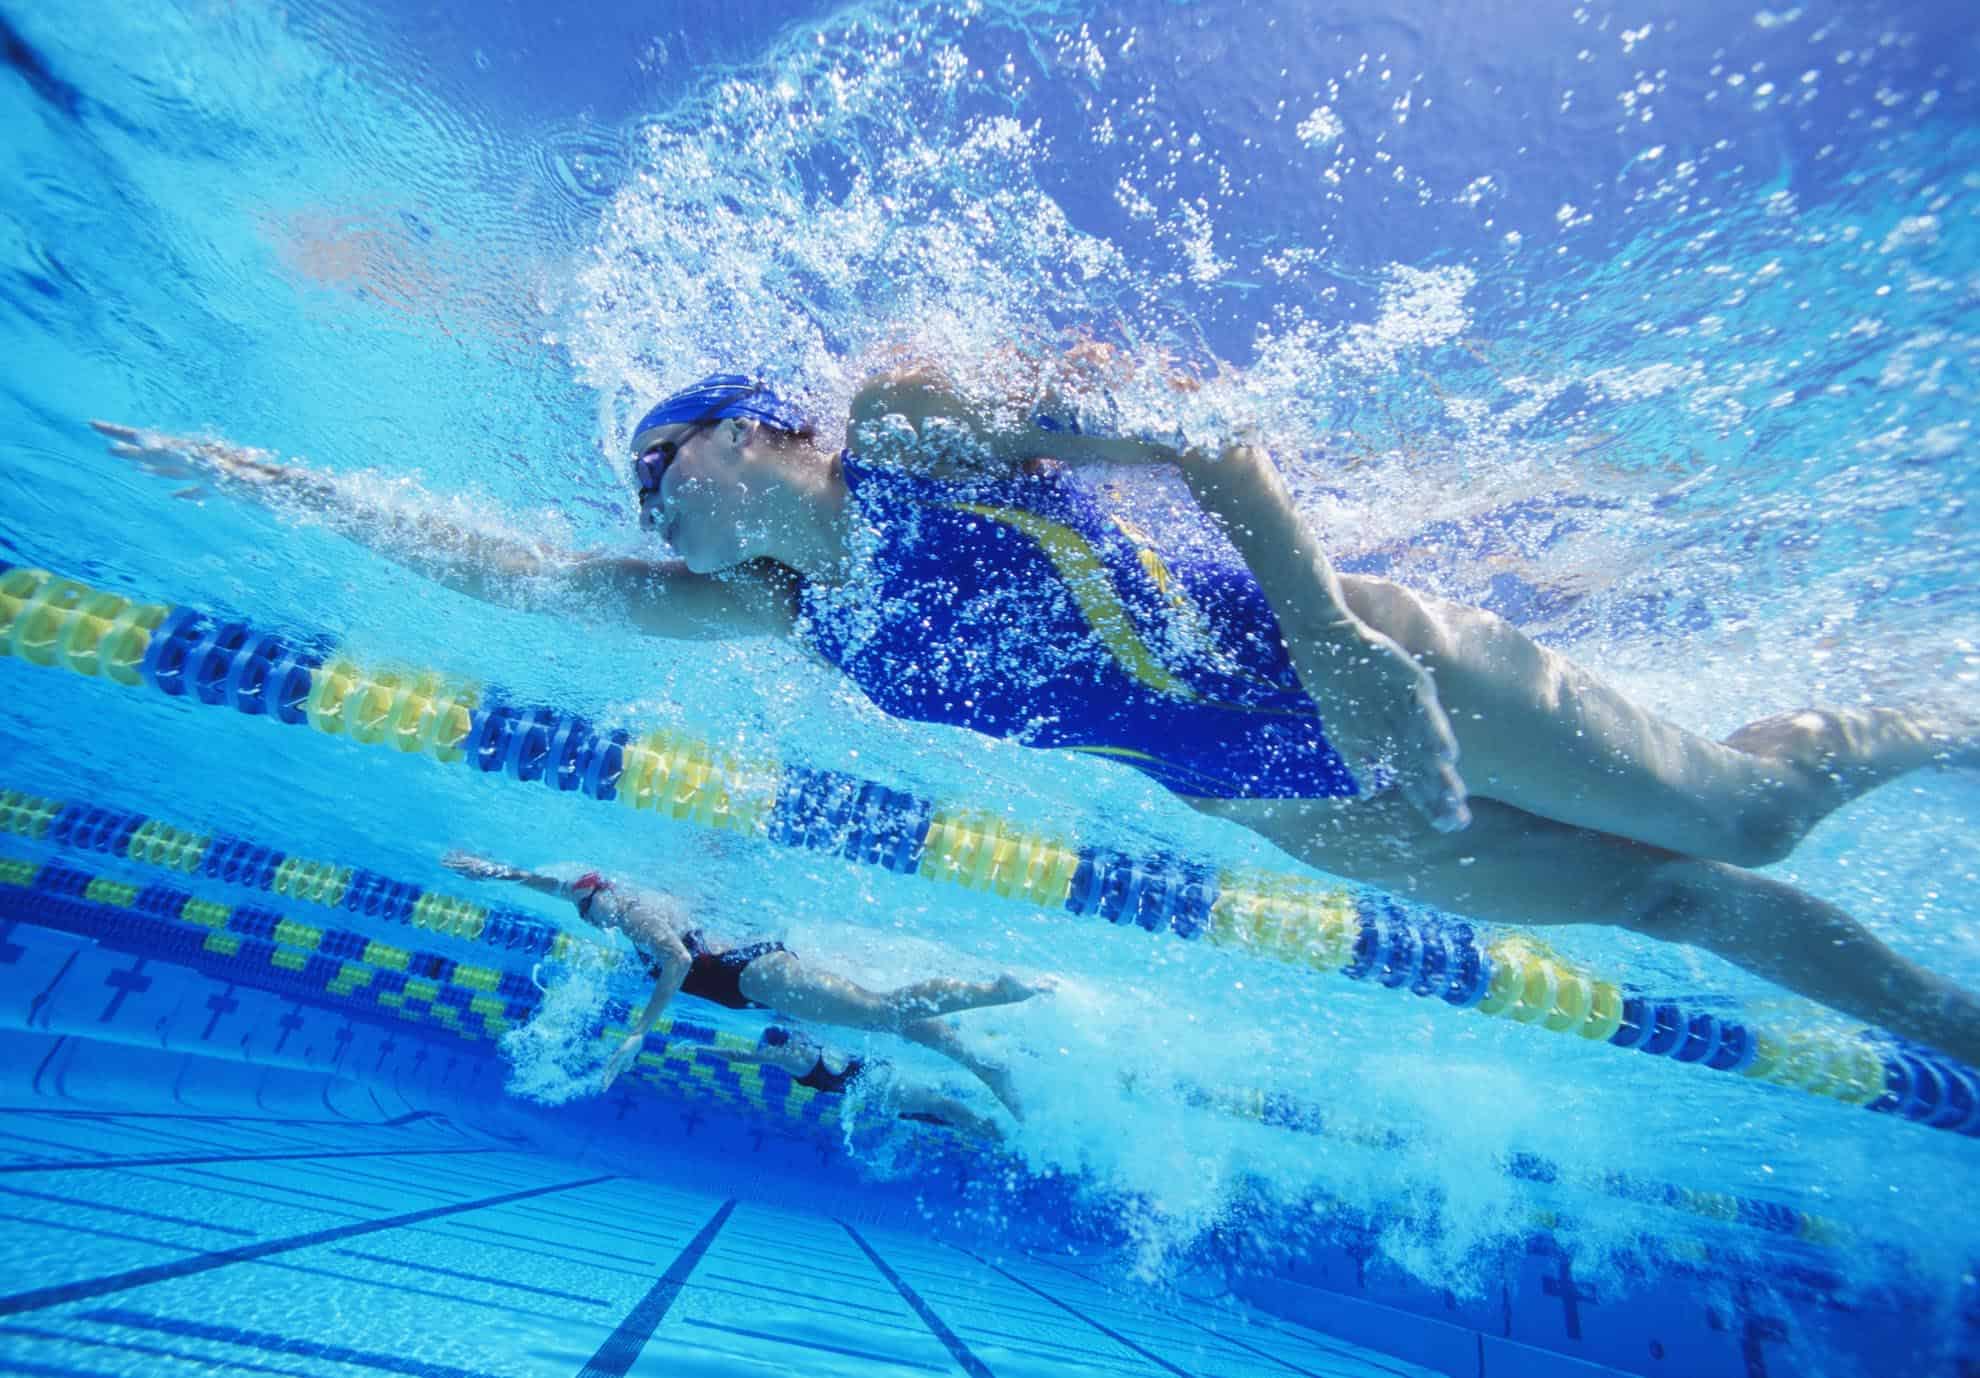 Lecteur mp3 running et aquatique (natation)